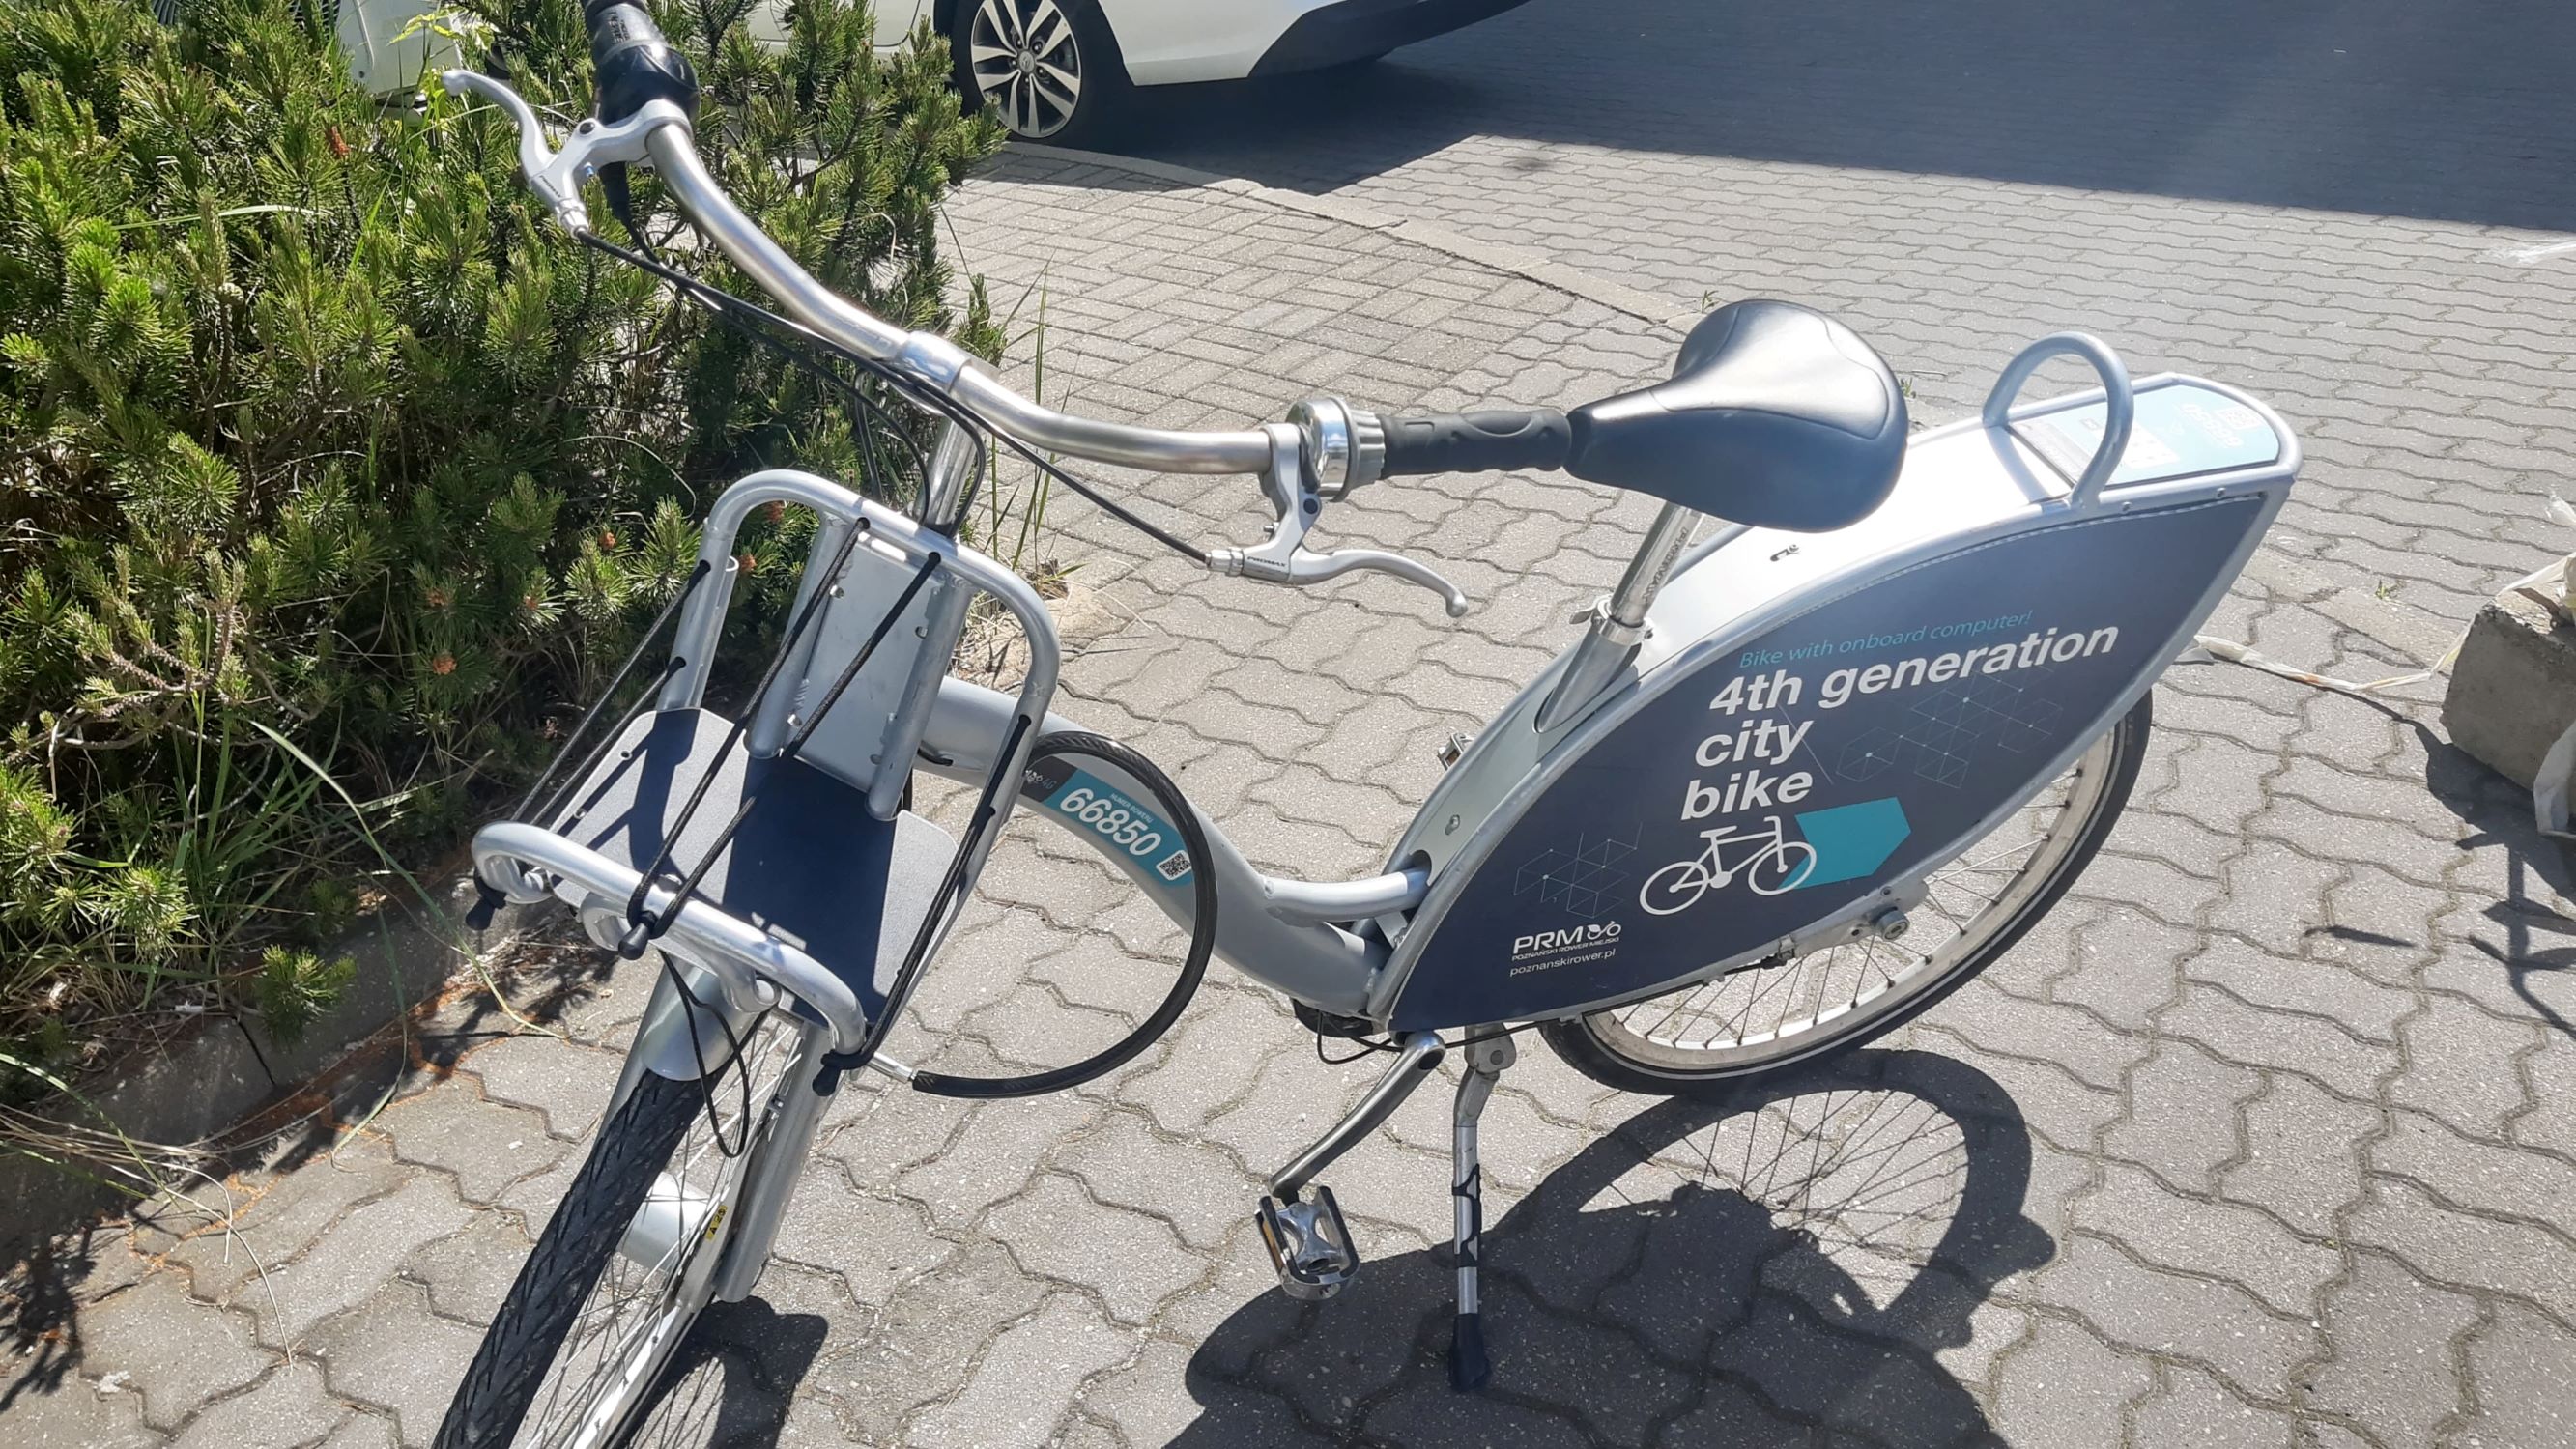 Poznański Rower Miejski: na ulicach Poznania pojawi się 97 nowych rowerów 4G! 